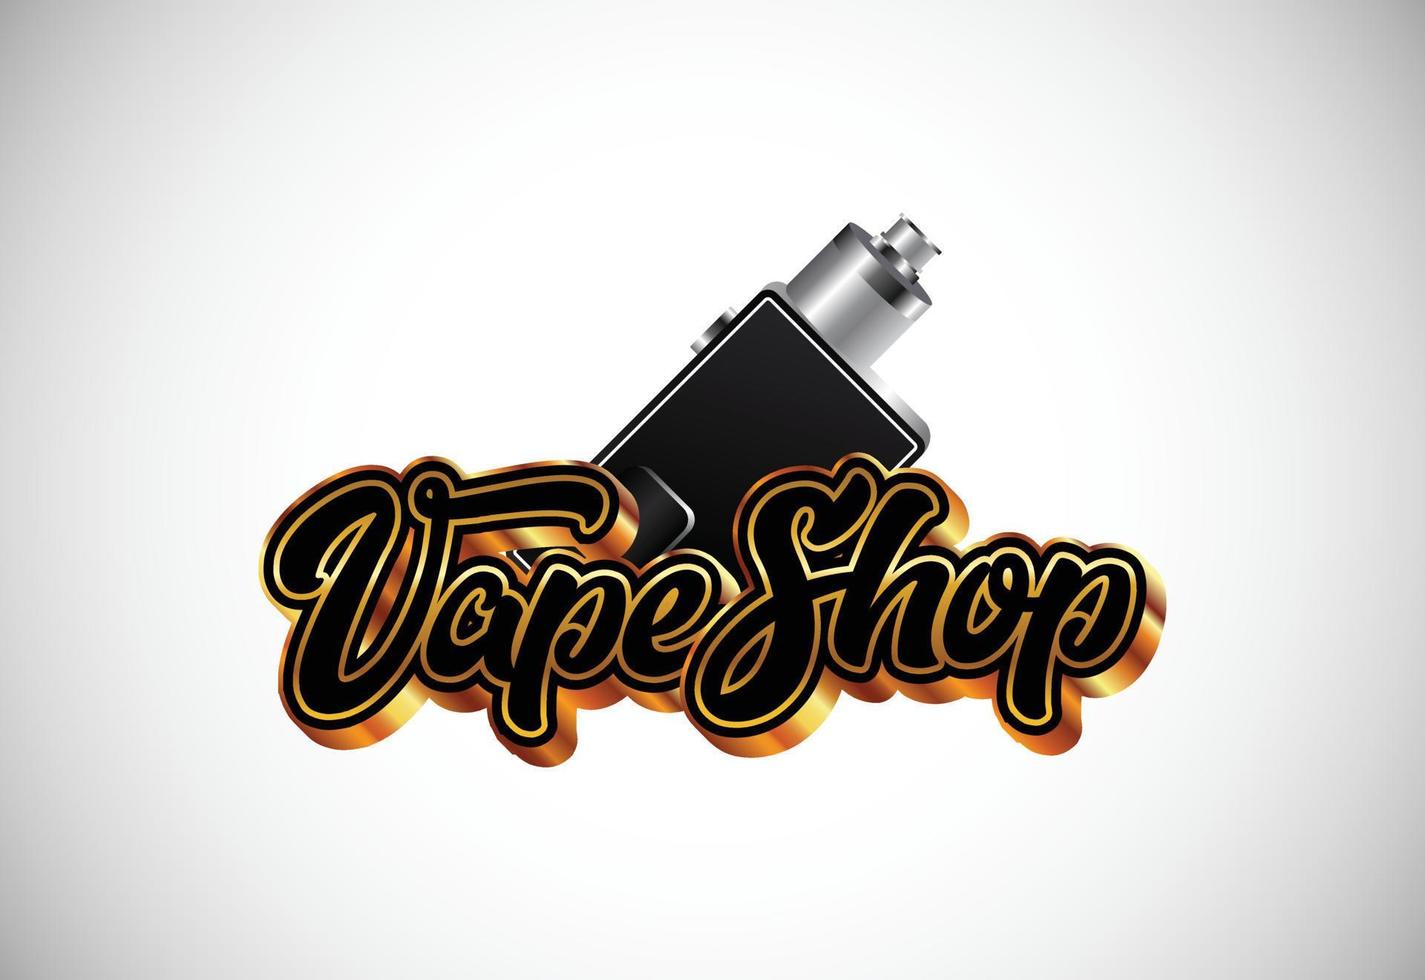 vape, modelo de design de logotipo de cigarro eletrônico. ilustração em vetor logotipo vaporizador eletrônico loja vape.